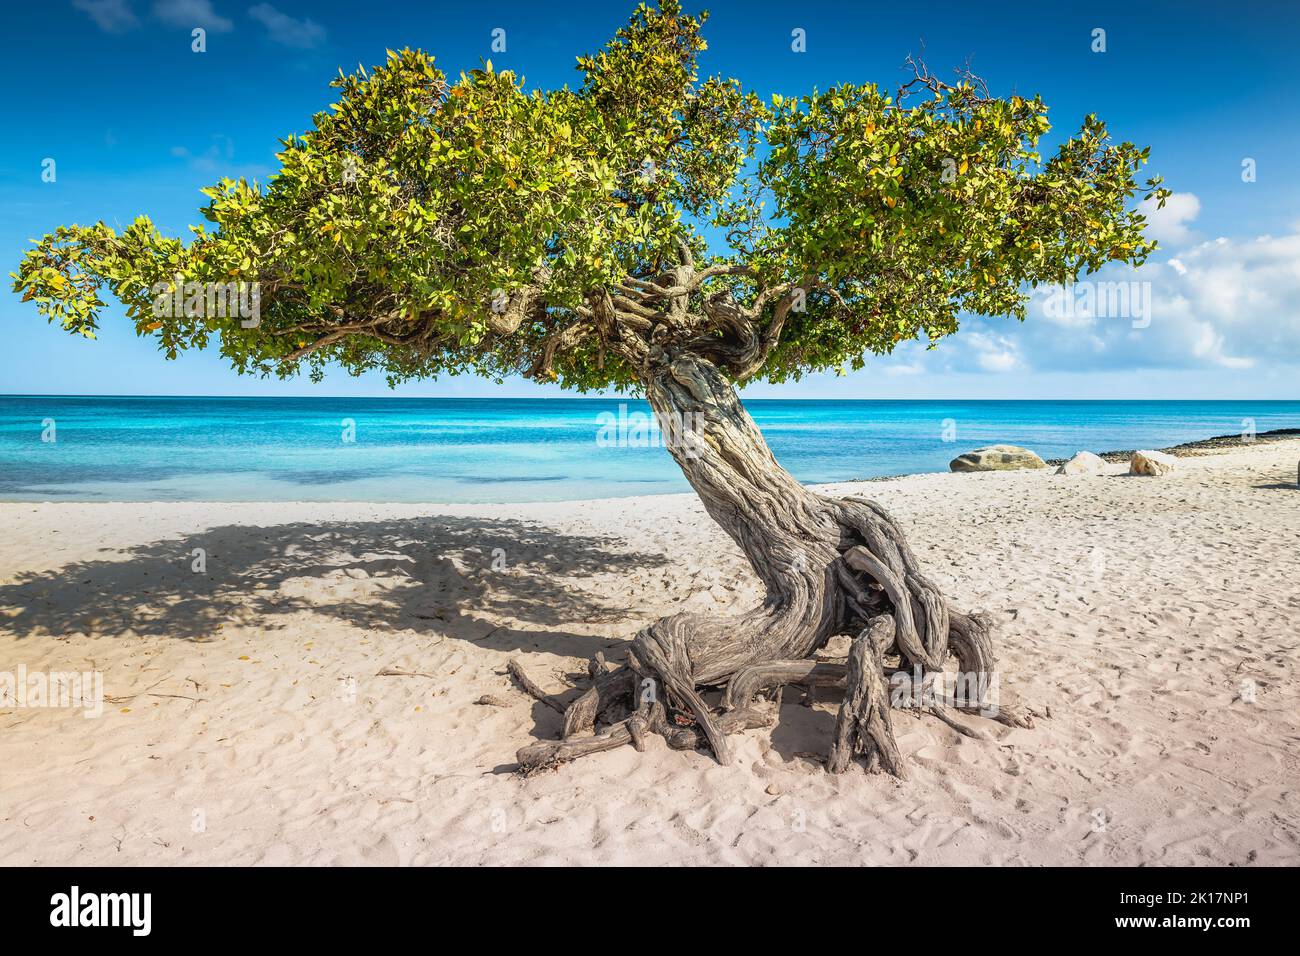 Aquila spiaggia con divi divi albero su Aruba isola, Antille olandesi Foto Stock